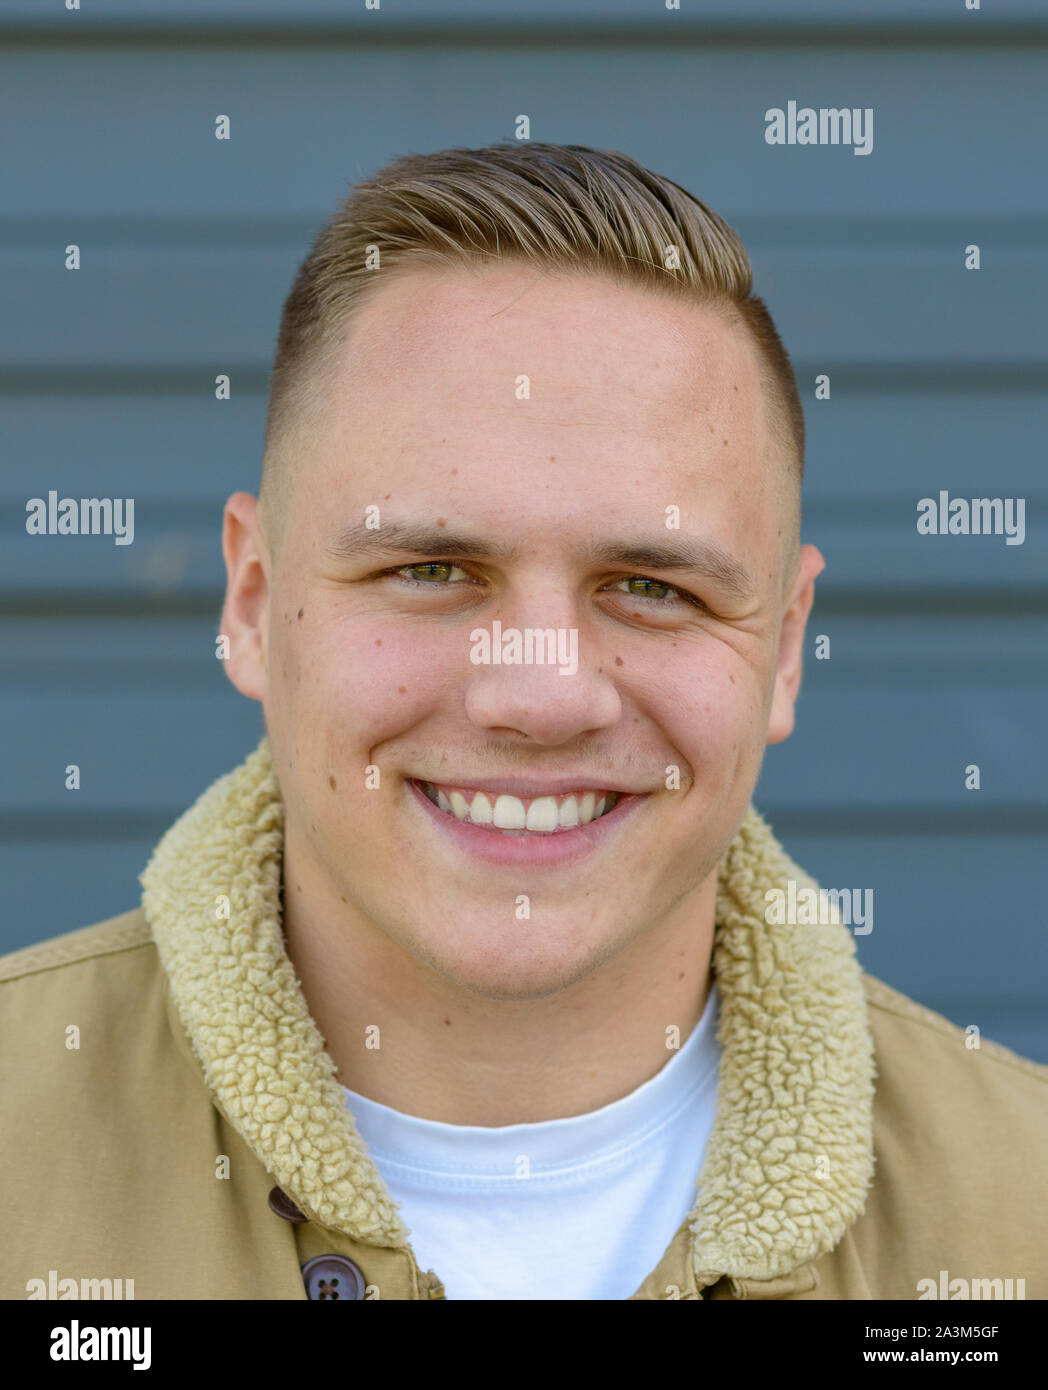 Retrato de un hombre joven con una amplia sonrisa encantadora, mirando la cámara contra una pared gris Foto de stock